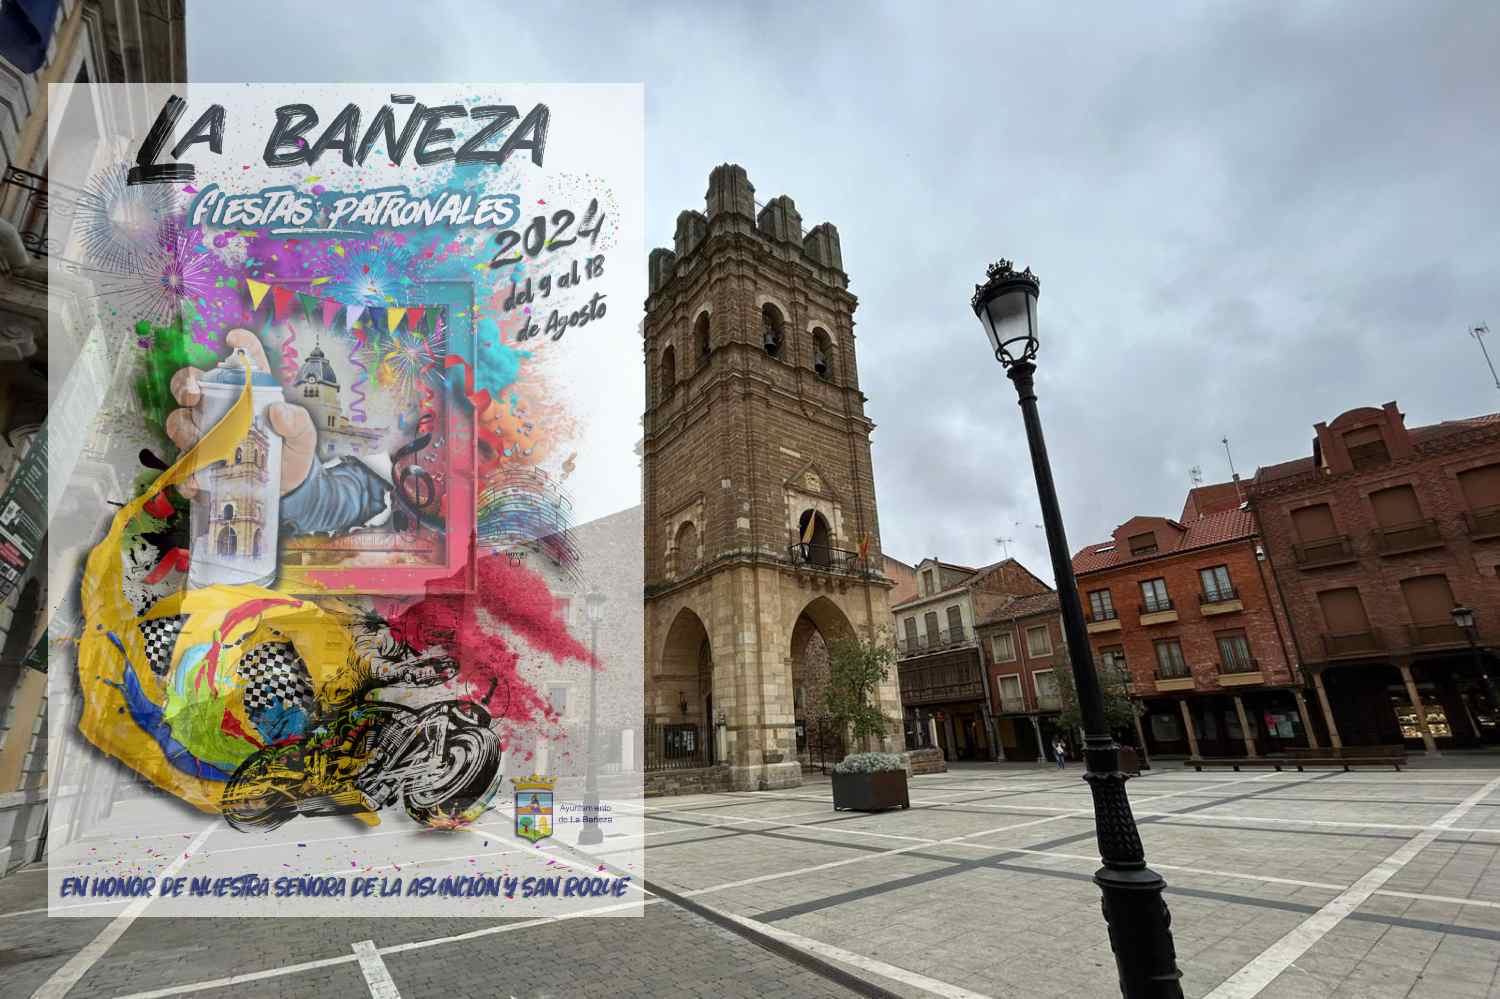 La Bañeza (León) ya tiene cartel anunciacidor de sus fiestas patronales